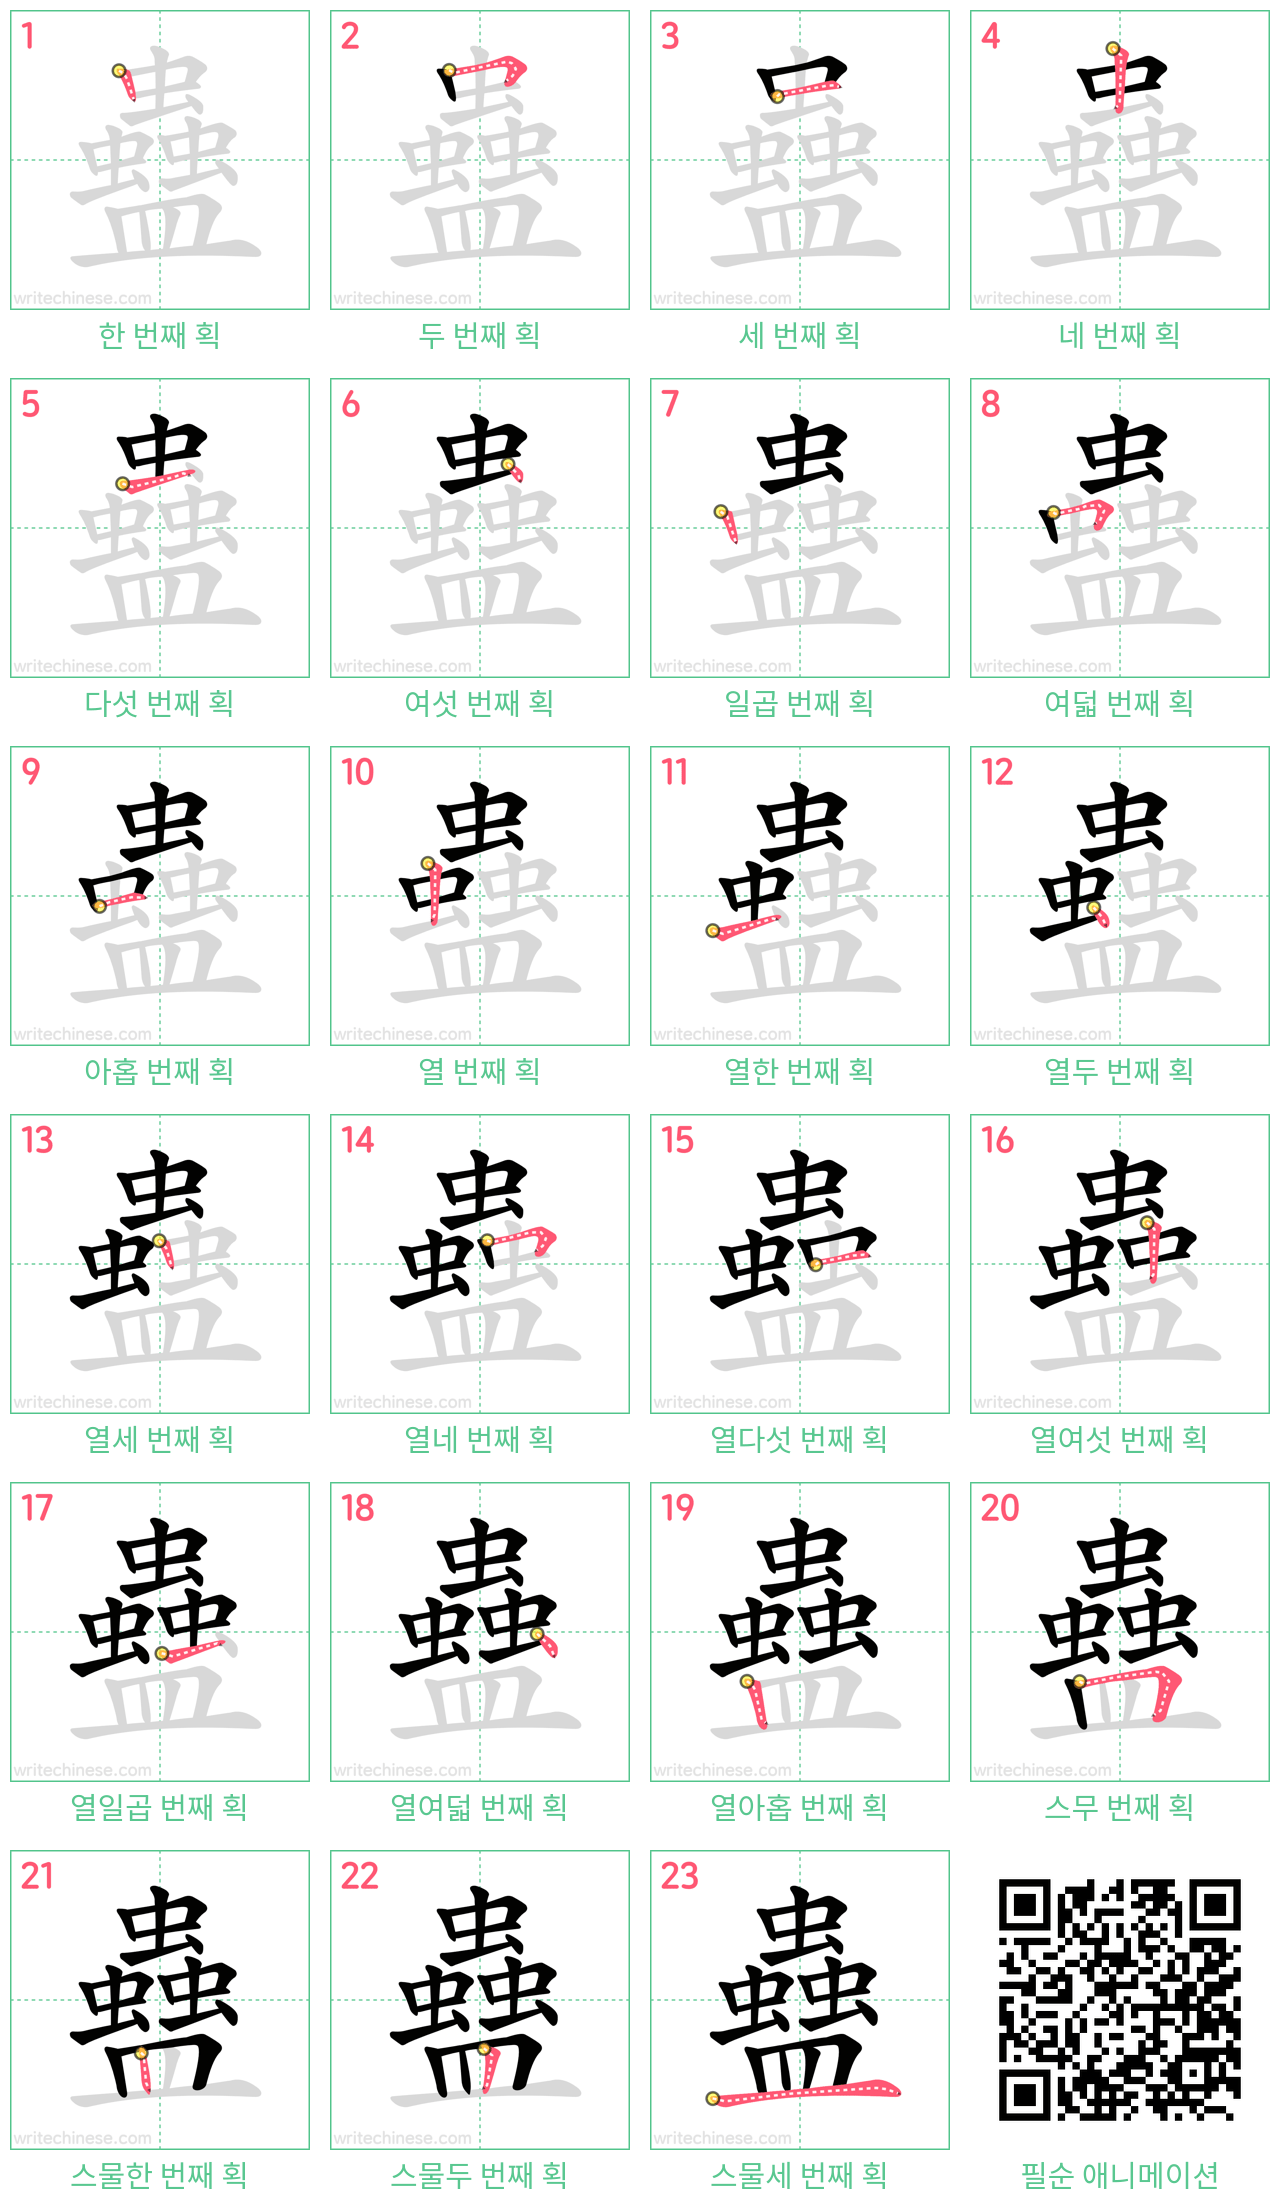 蠱 step-by-step stroke order diagrams